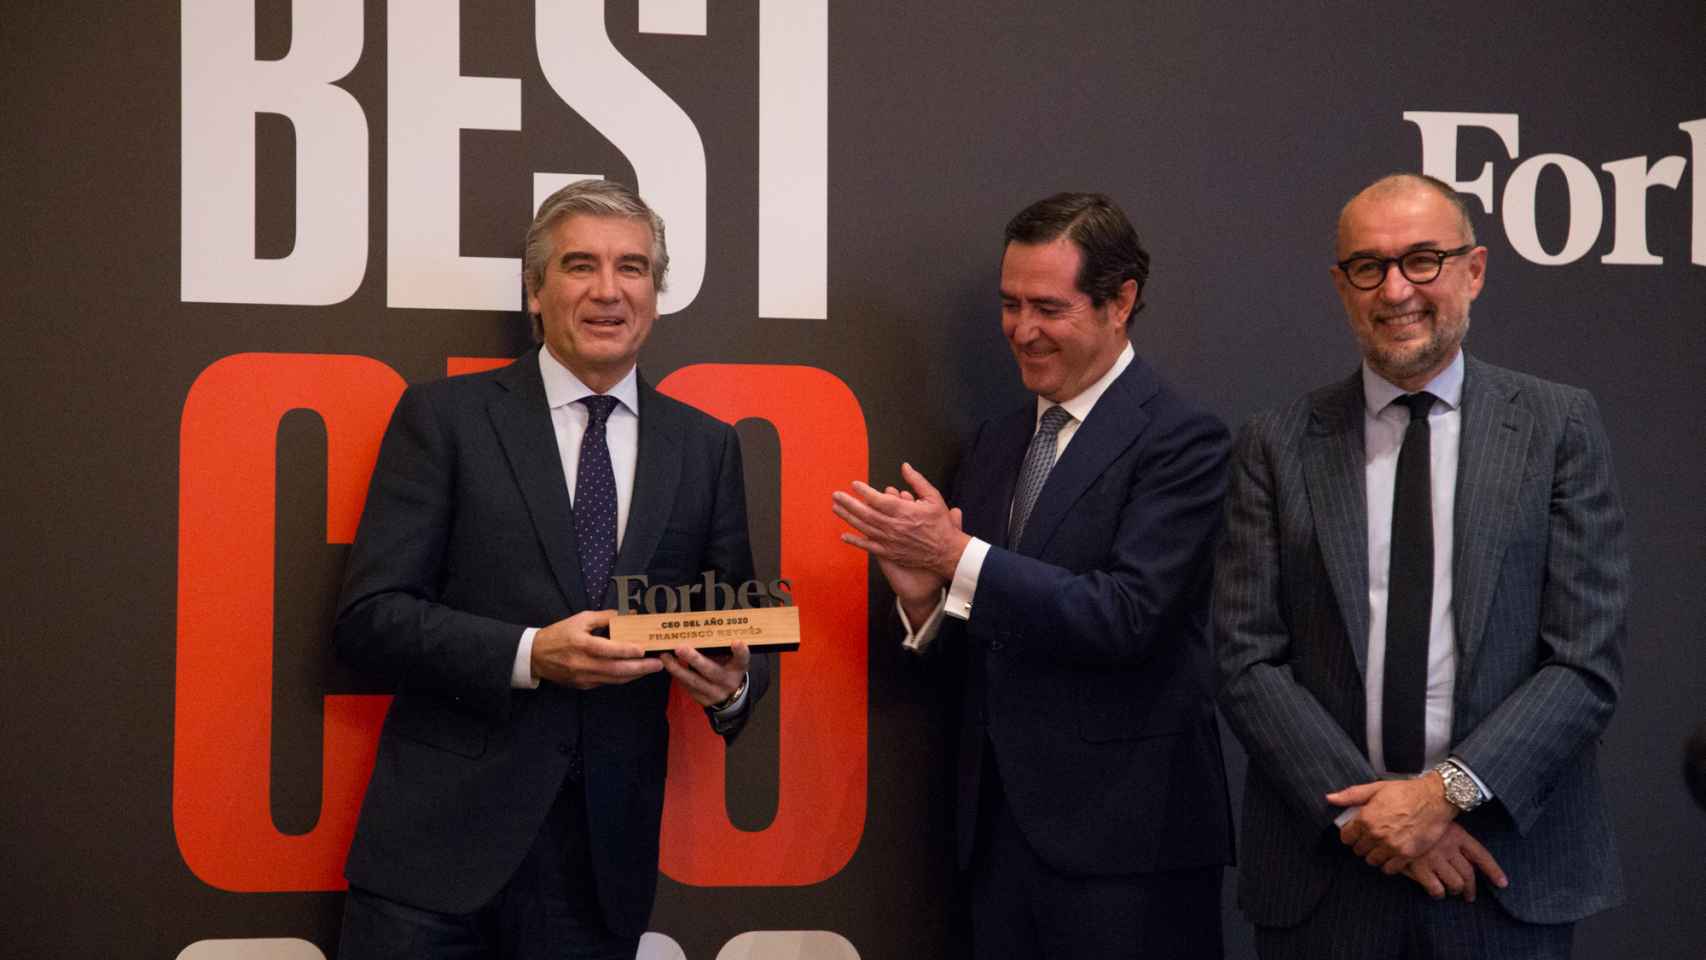 Francisco Reynés, presidente de Naturgy, en el momento en el que recoge el premio  Forbes el mejor CEO de 2021.